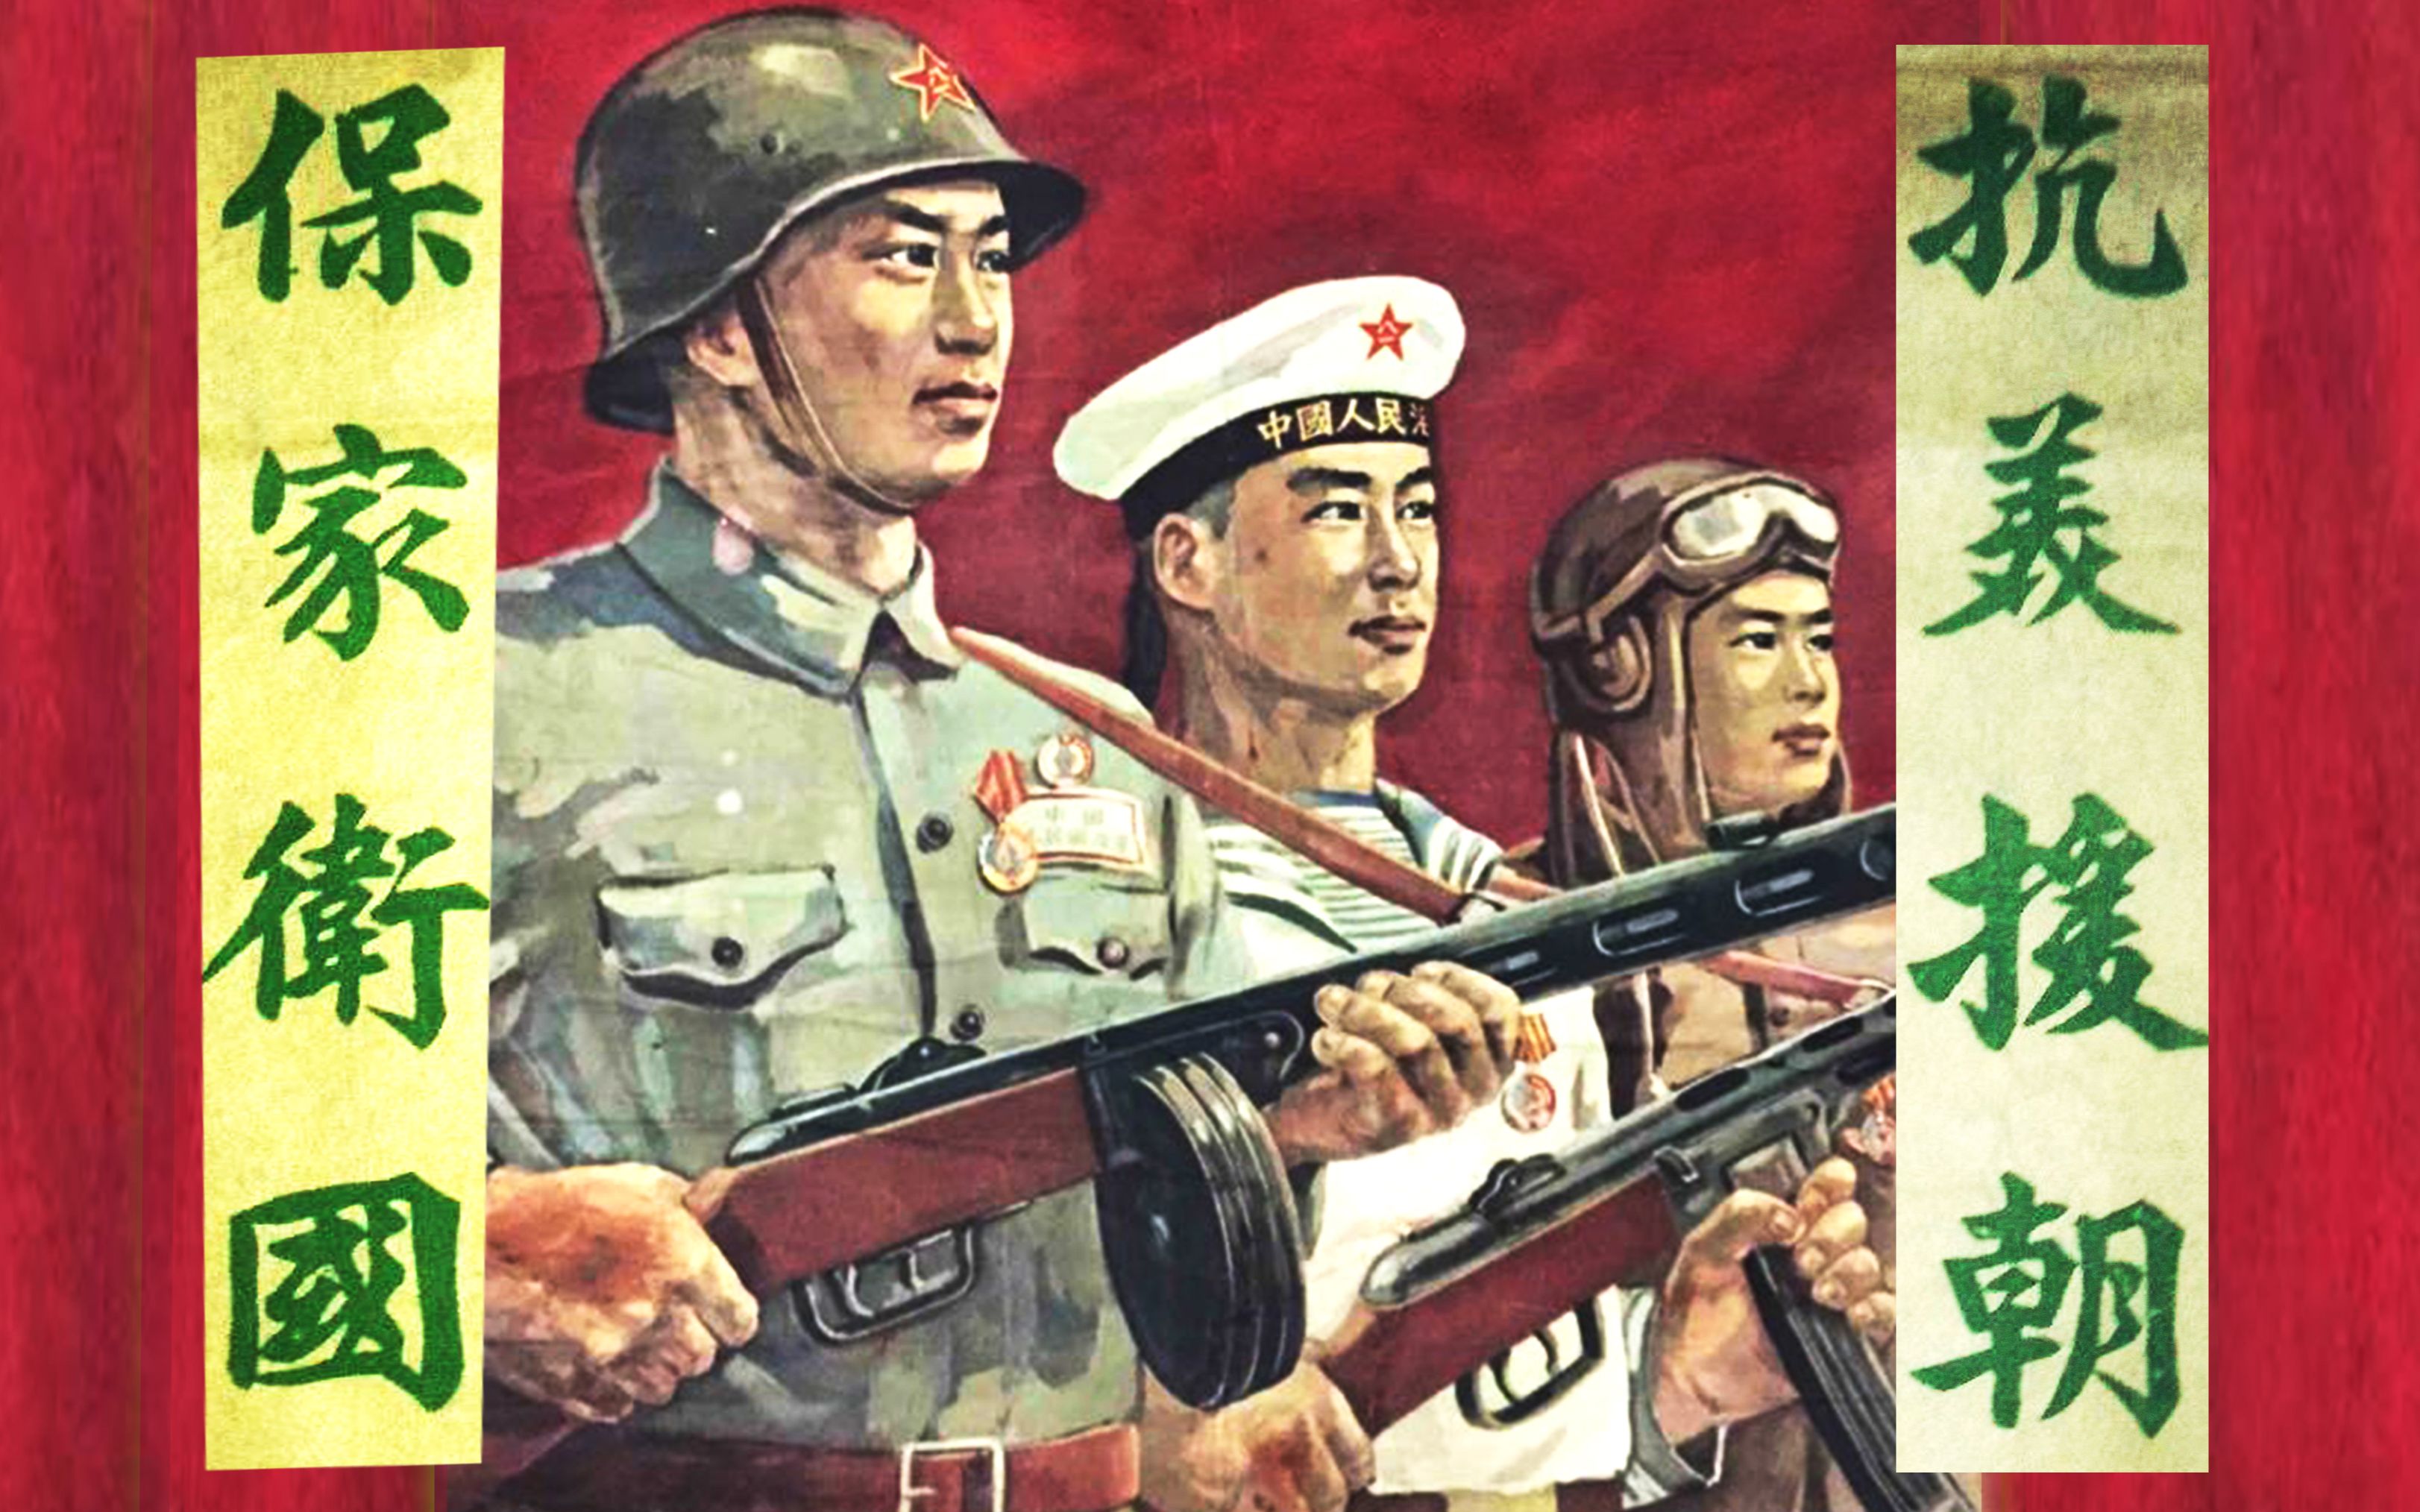 朝鲜战争,身穿朝鲜军装的士兵里面还穿着一件中国军装,有何隐情